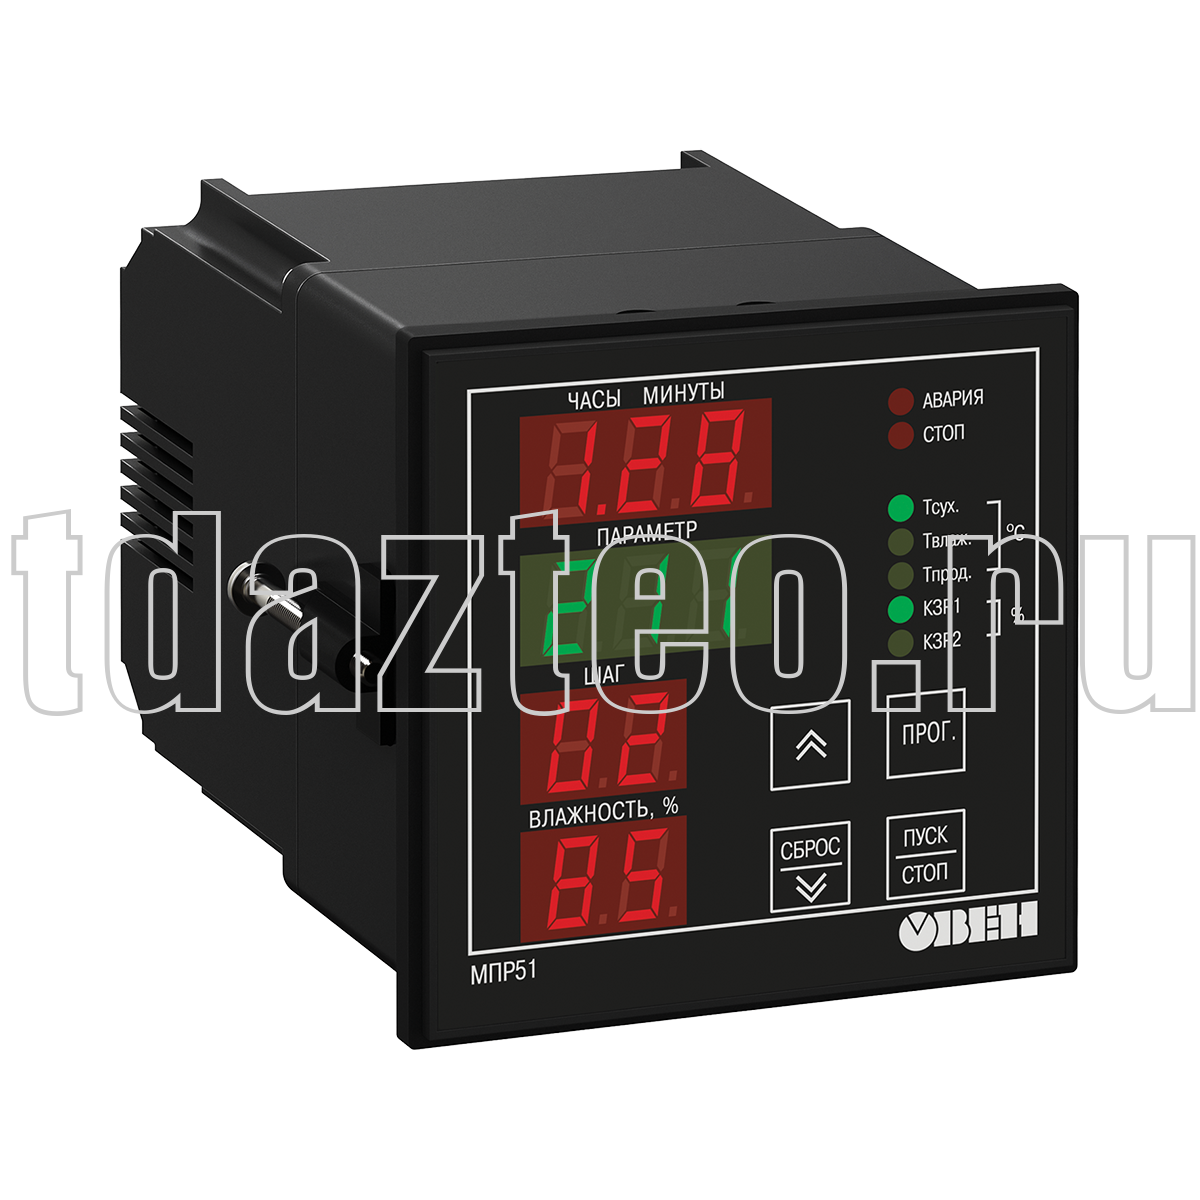 МПР51-Щ4.01.RS регулятор температуры и влажности, программируемый по времени ОВЕН.